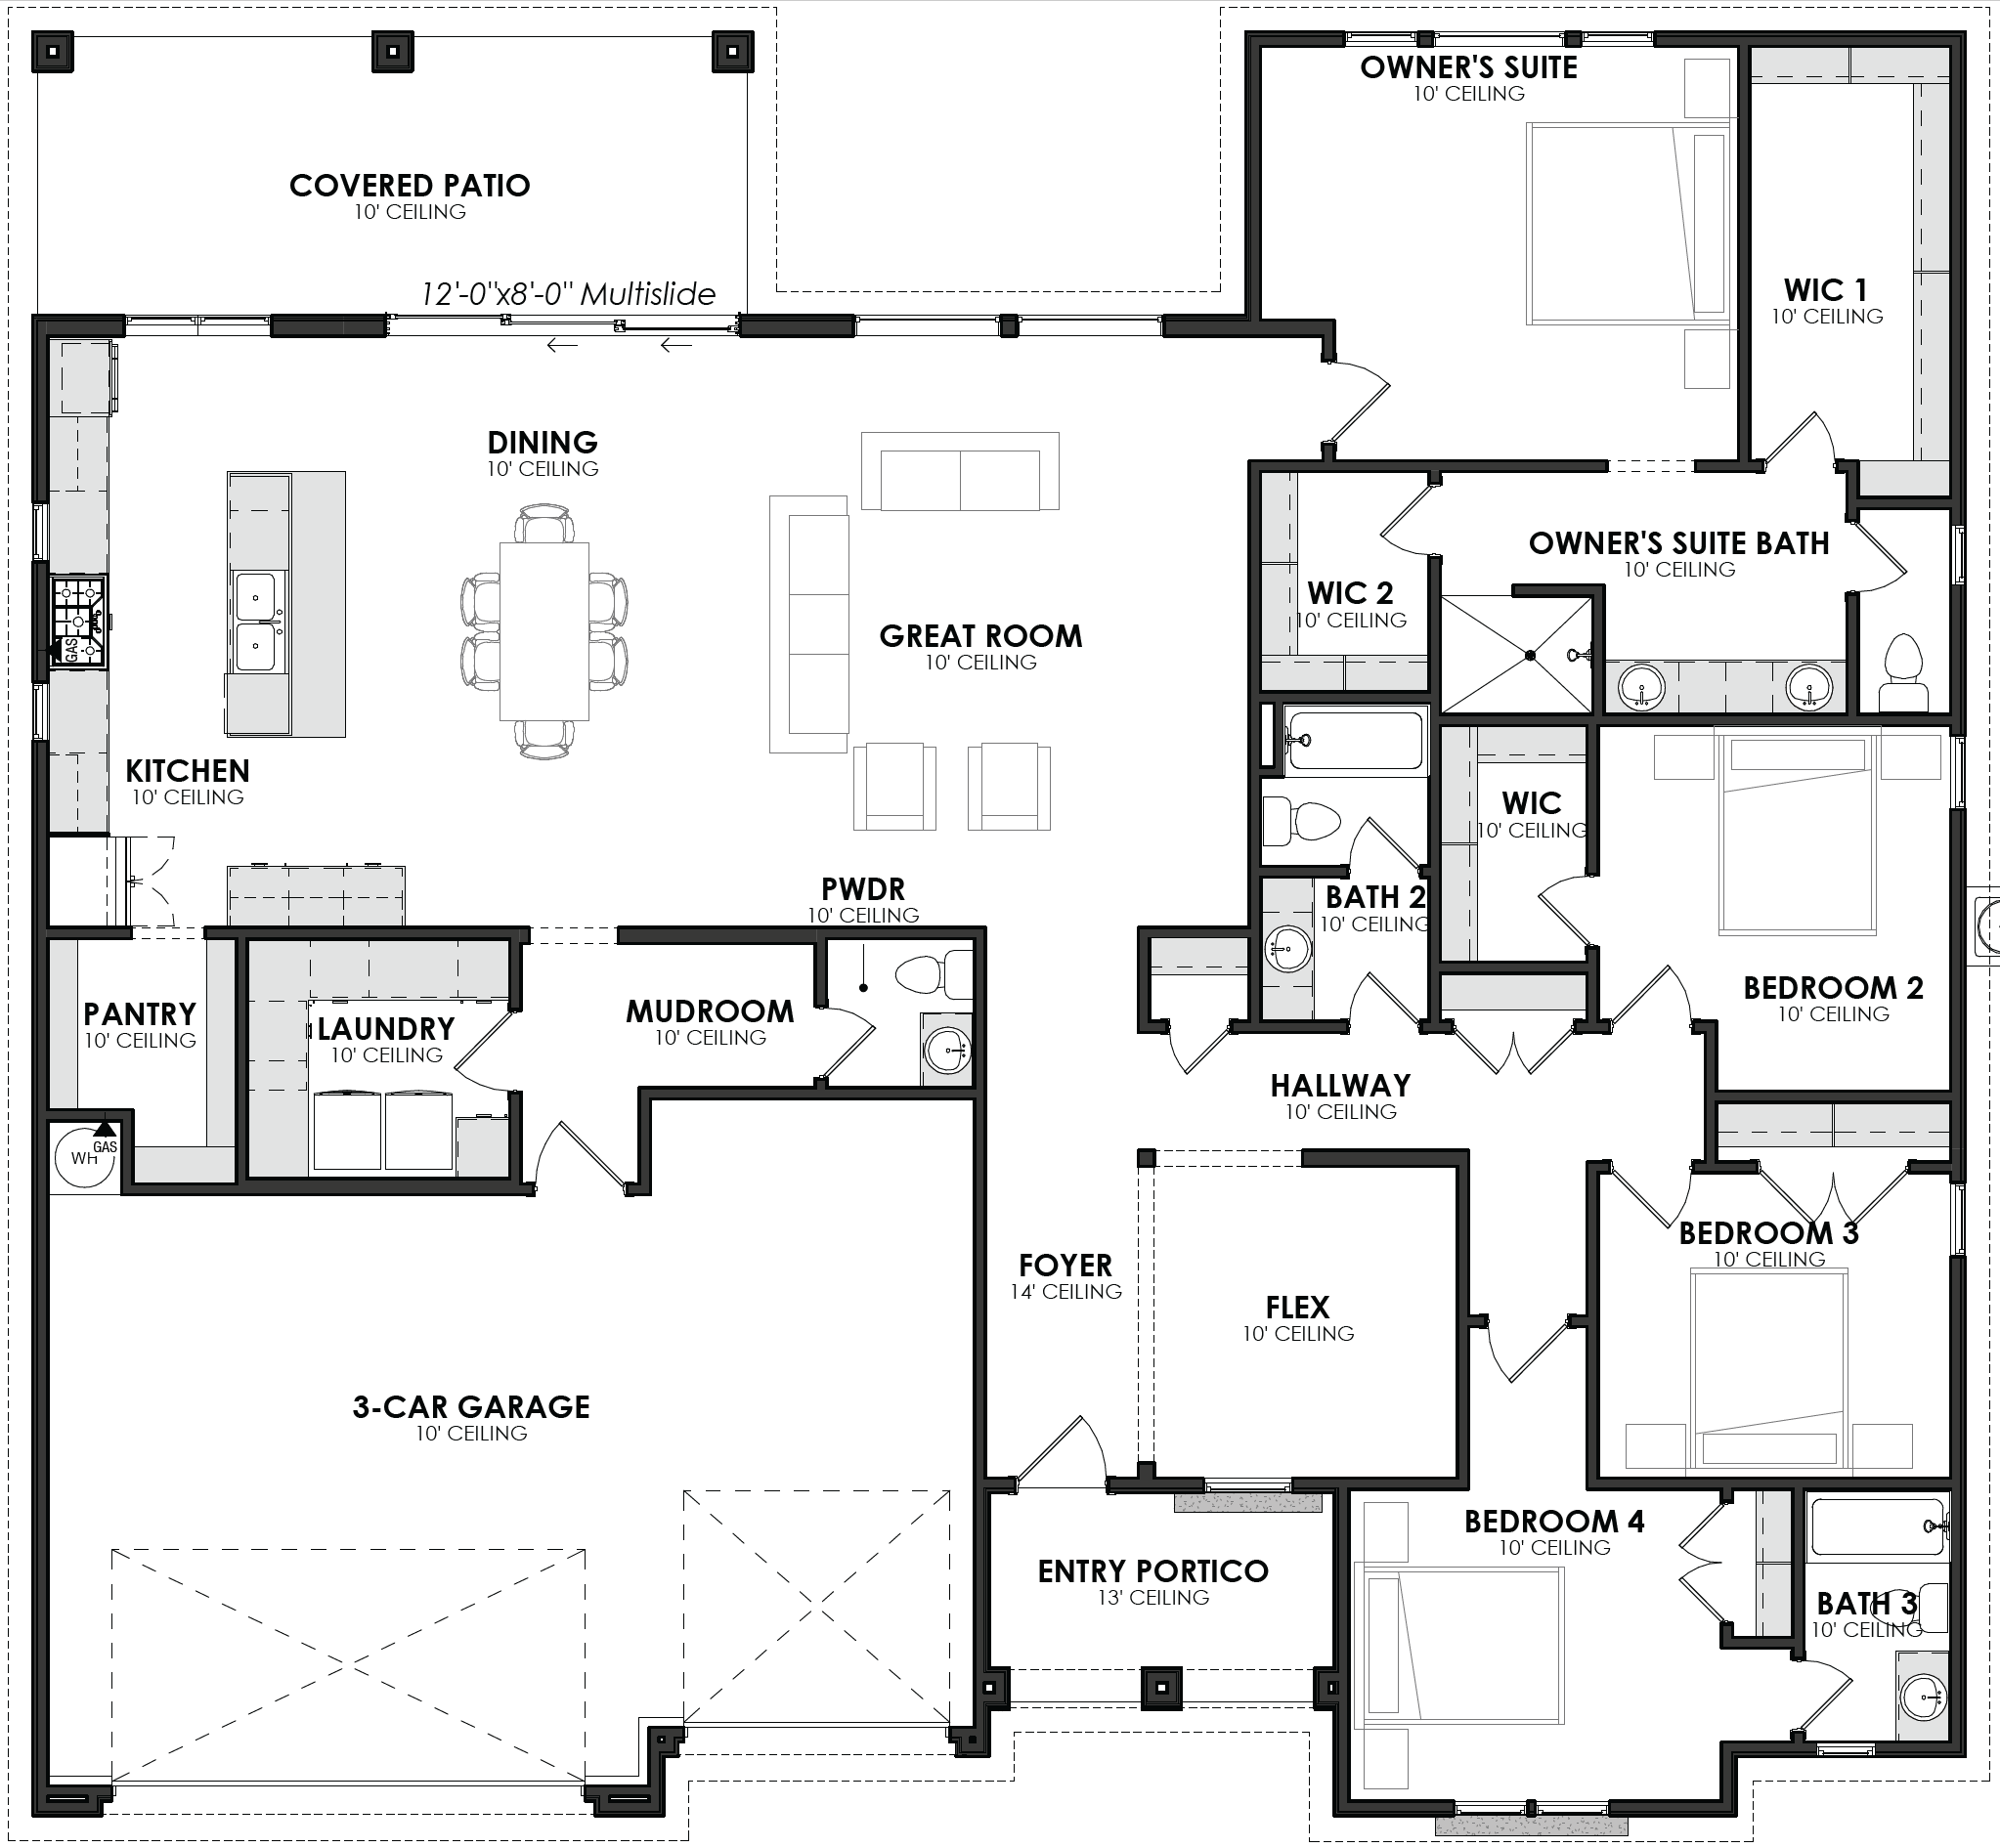 LUNA Residential Floorplans in St. George, UT